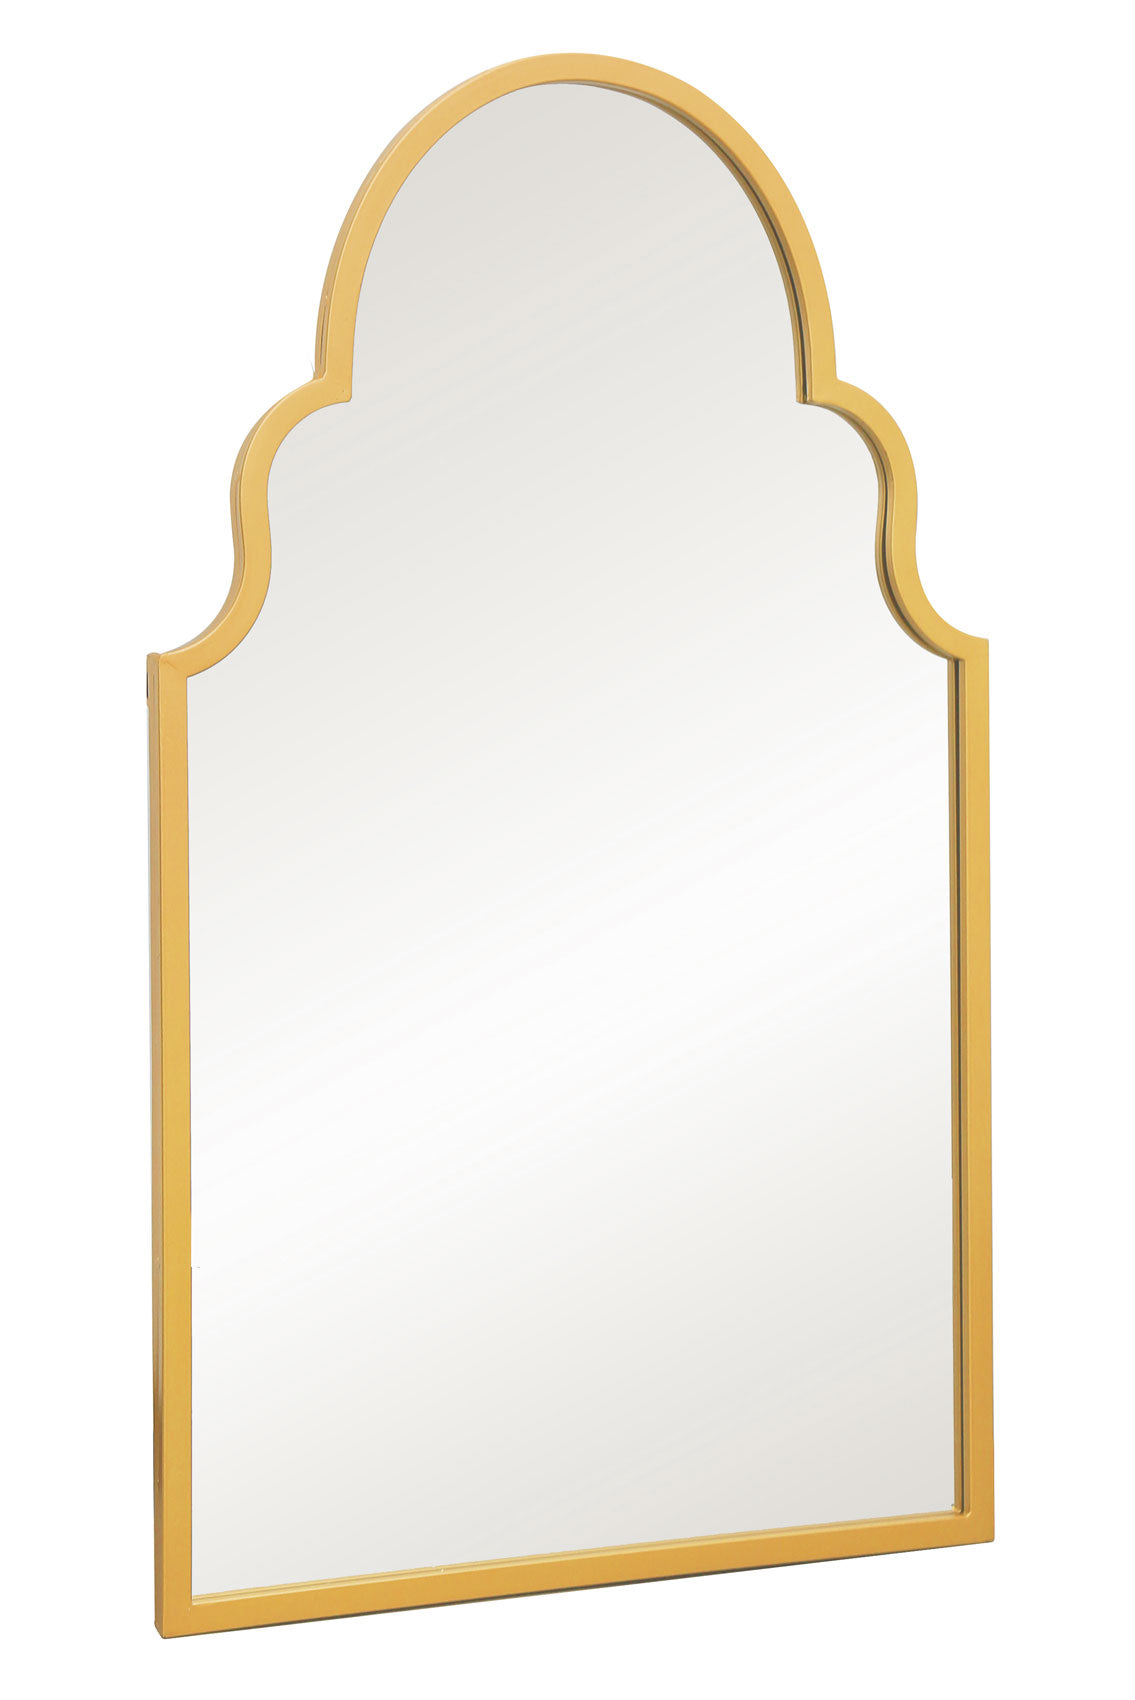 Arch Style Garden Mirror (Gold Frame)